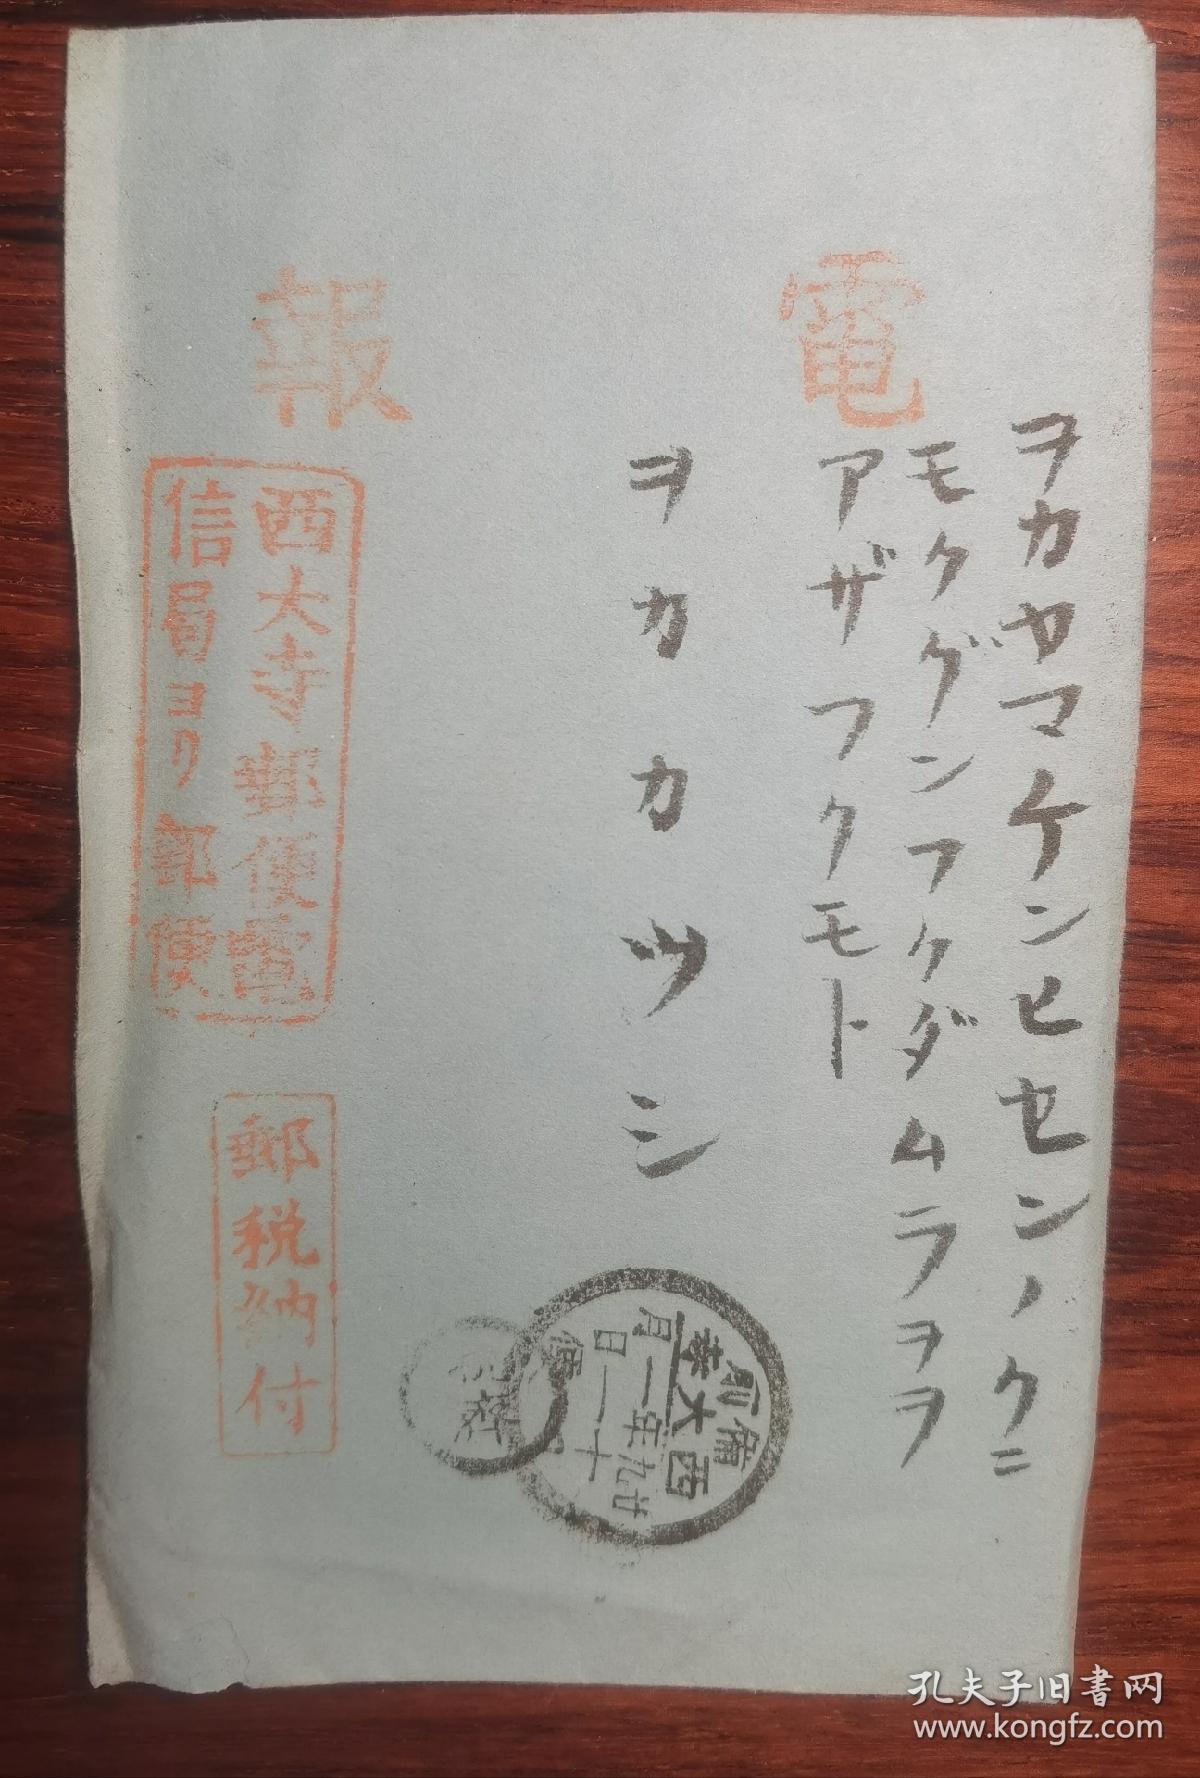 1896年电报一封   上面贴有大日本帝国电信邮票，盖有十几个章戳。内容部分保存完好。